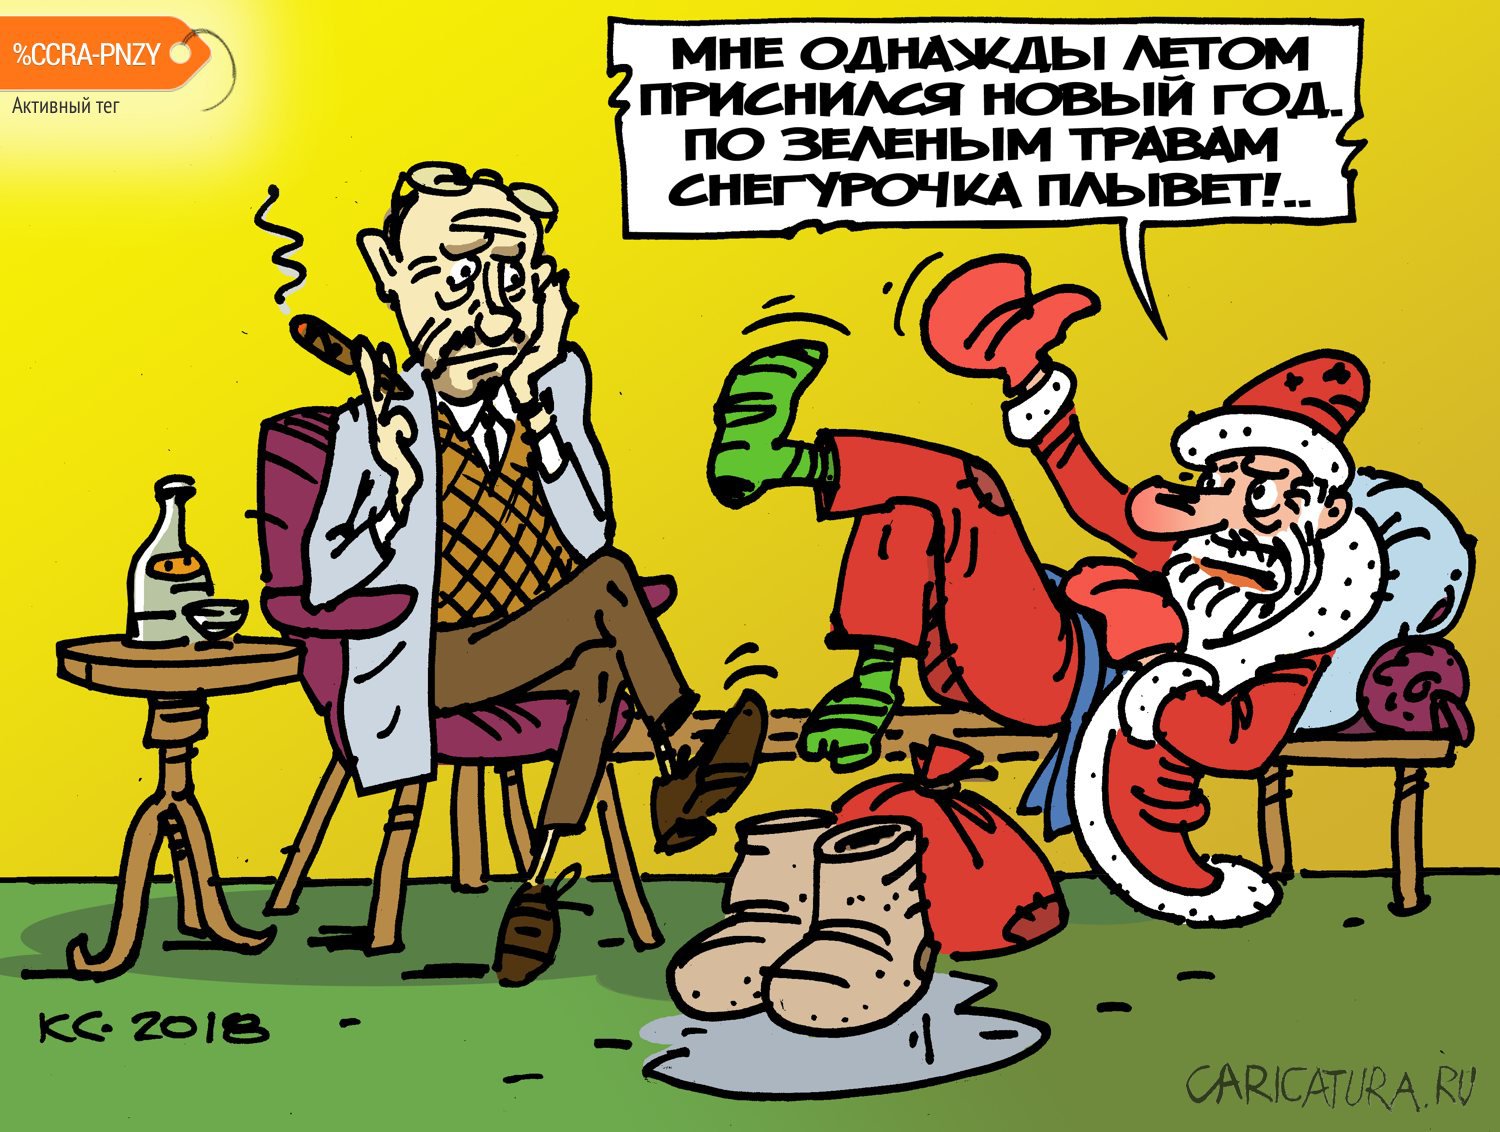 Карикатура "Мне однажды летом приснился Новый год!..", Вячеслав Капрельянц